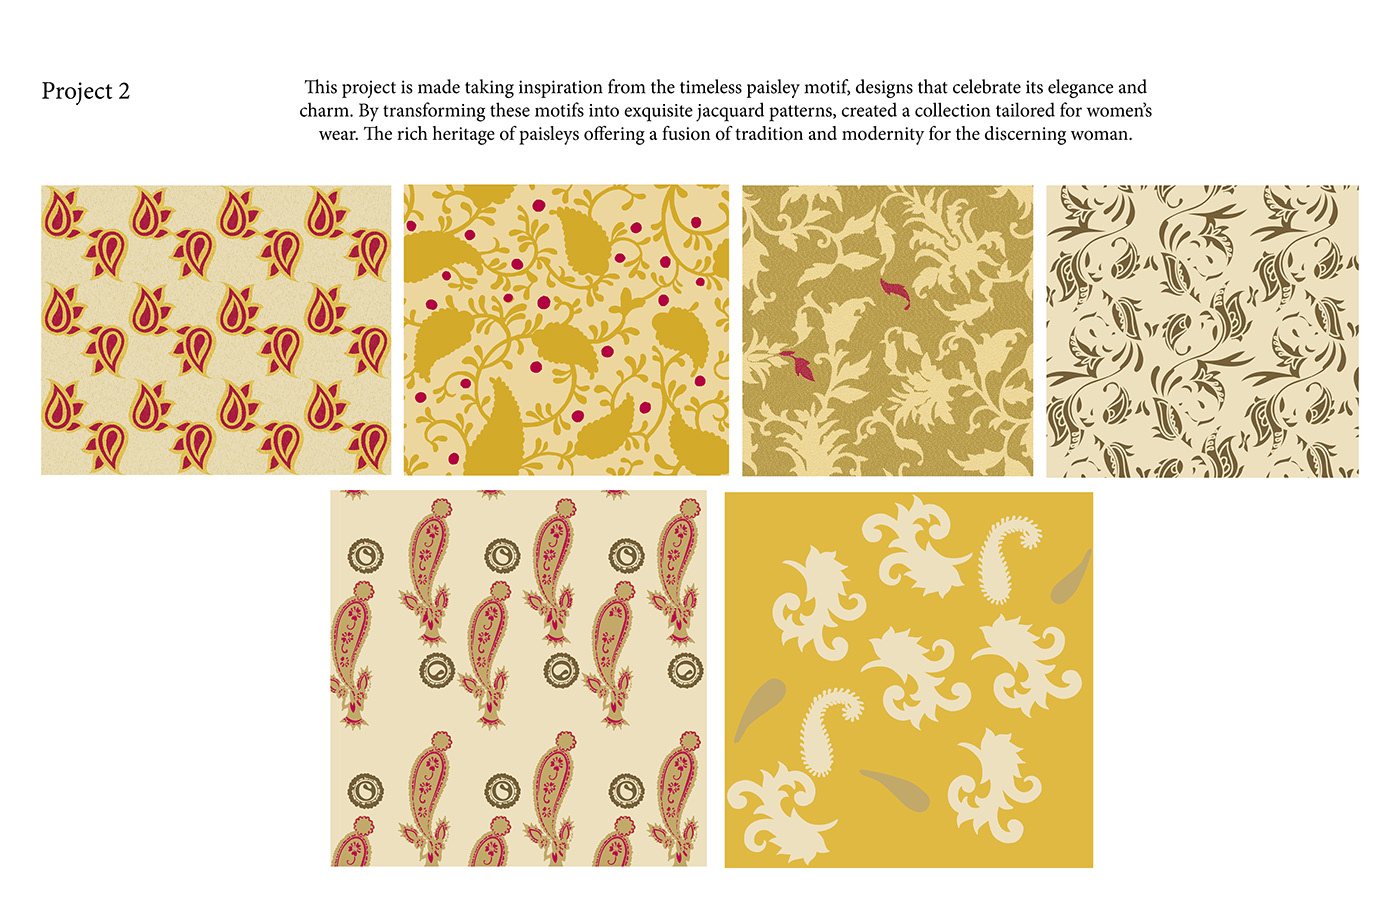 jacquard damask weaving textile PointCarre textile design  NIFT